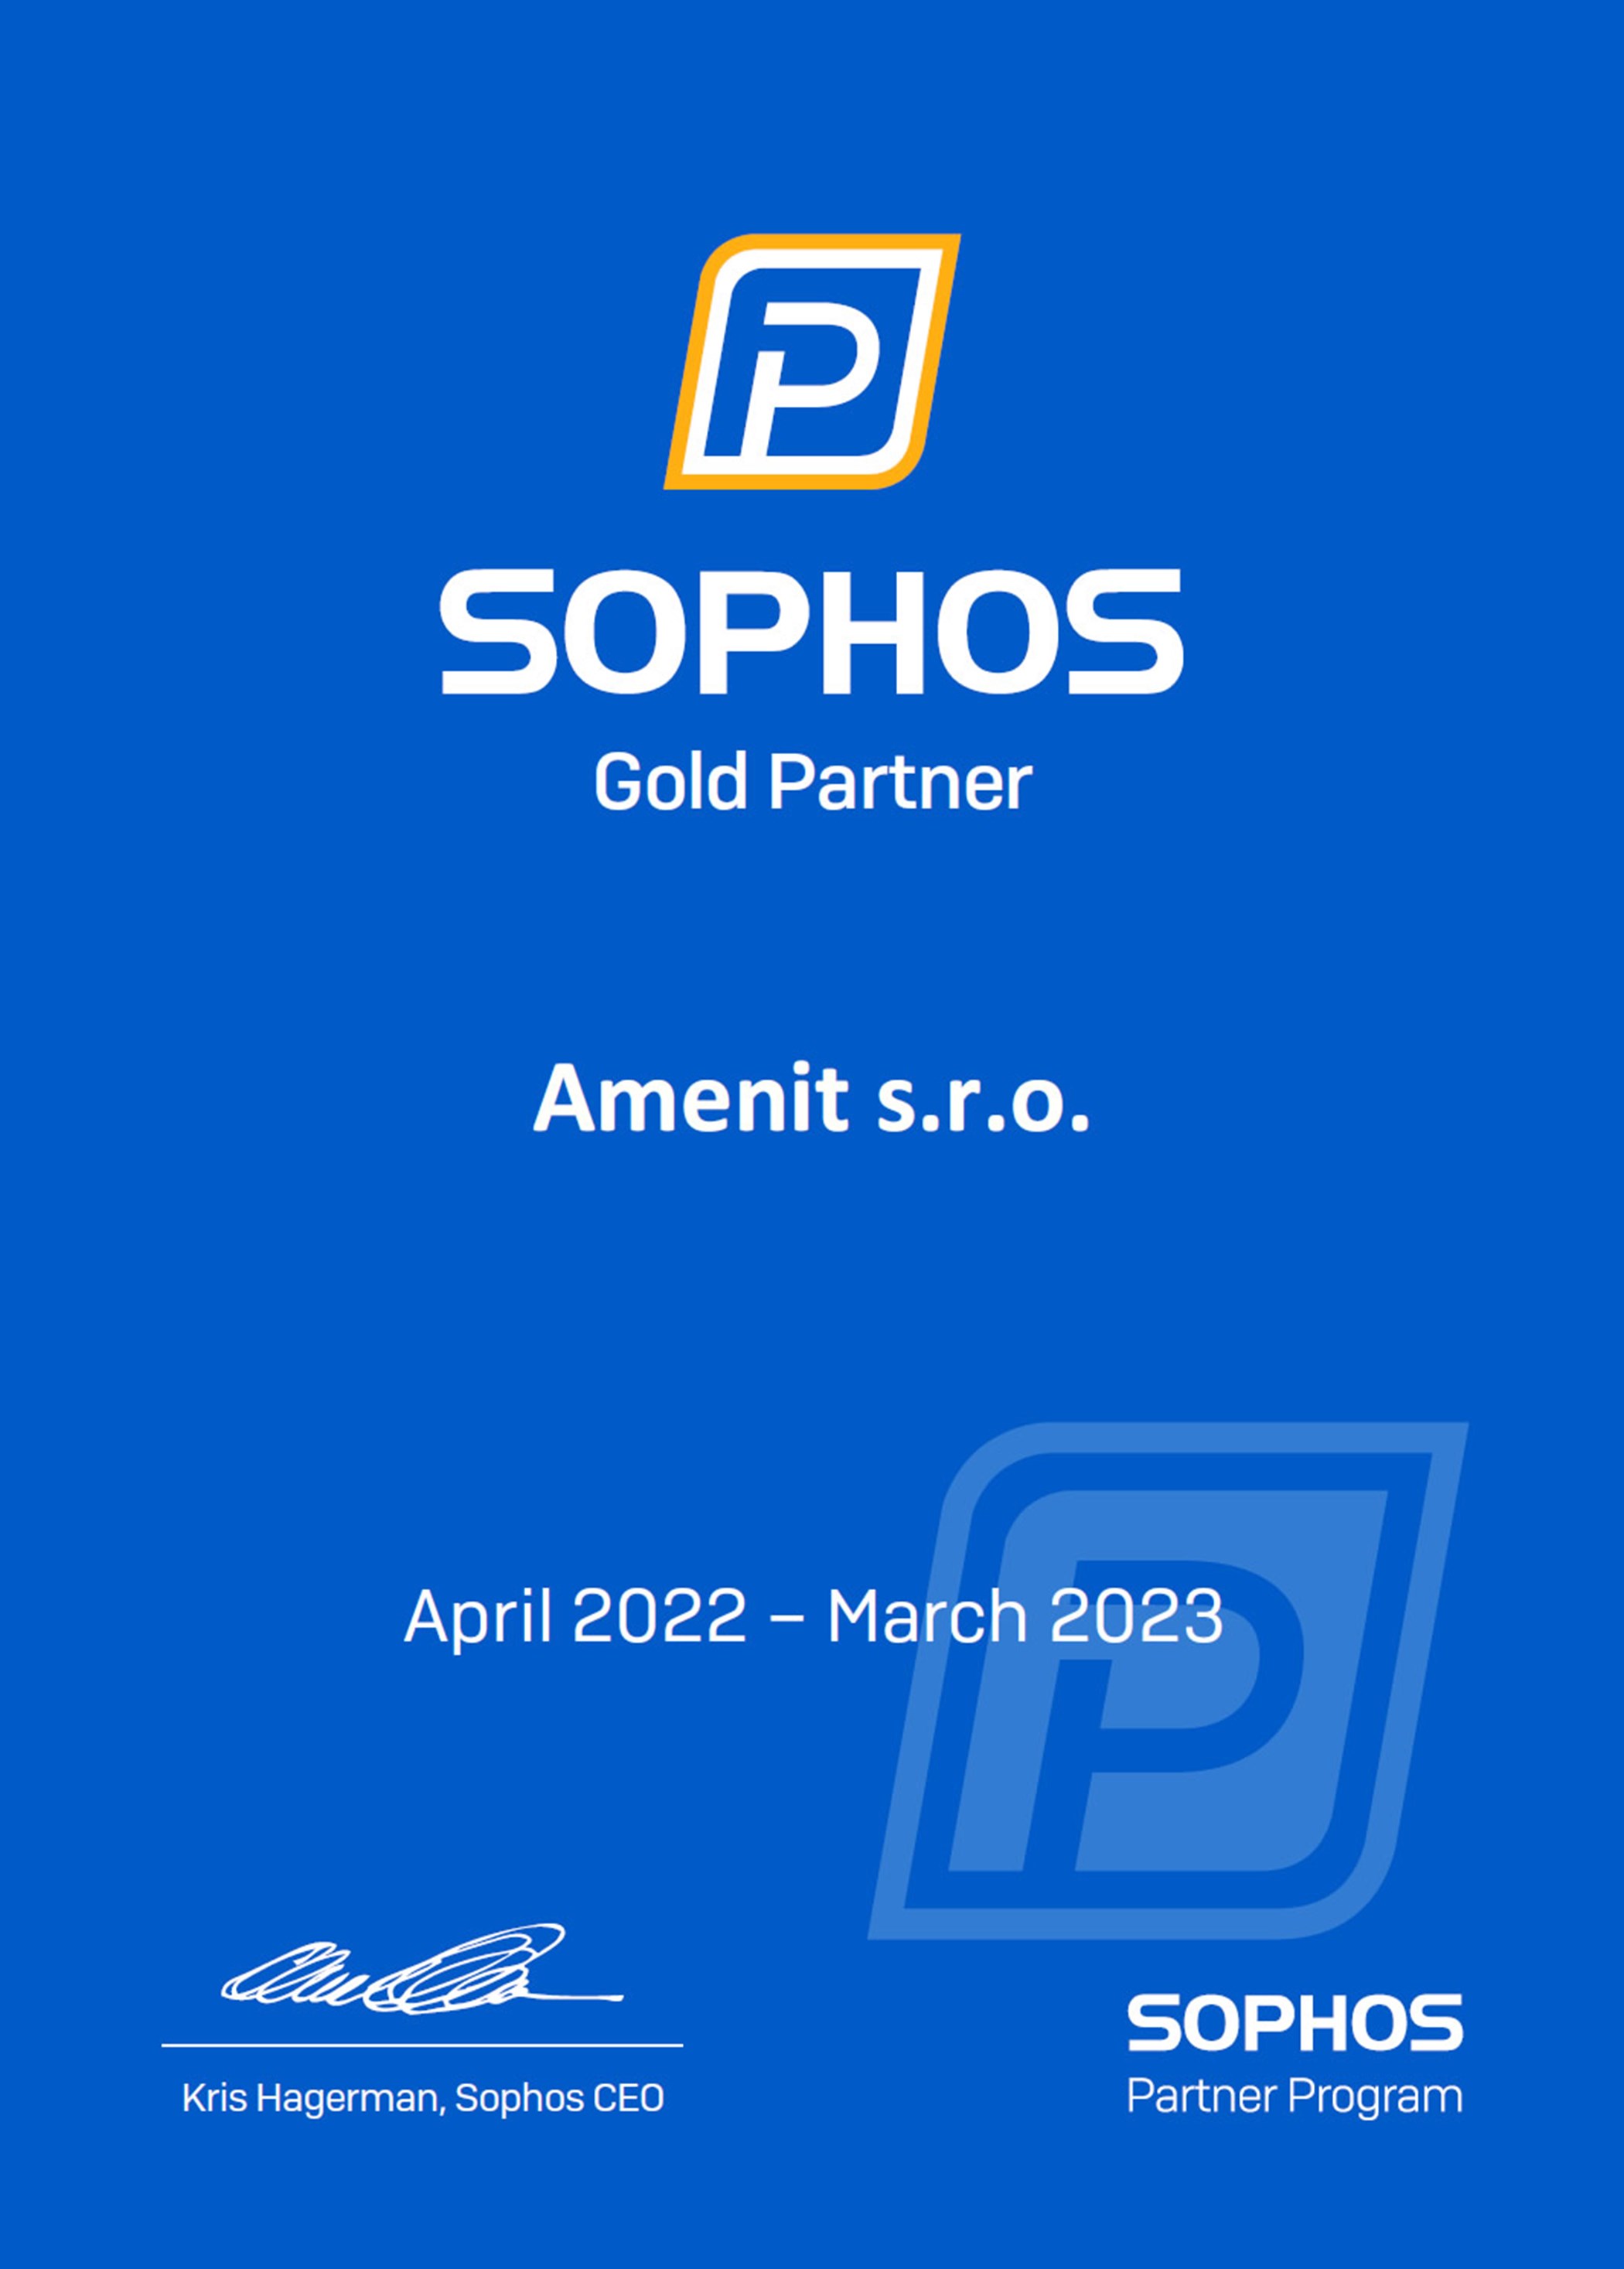 SOPHOS Gold Partner